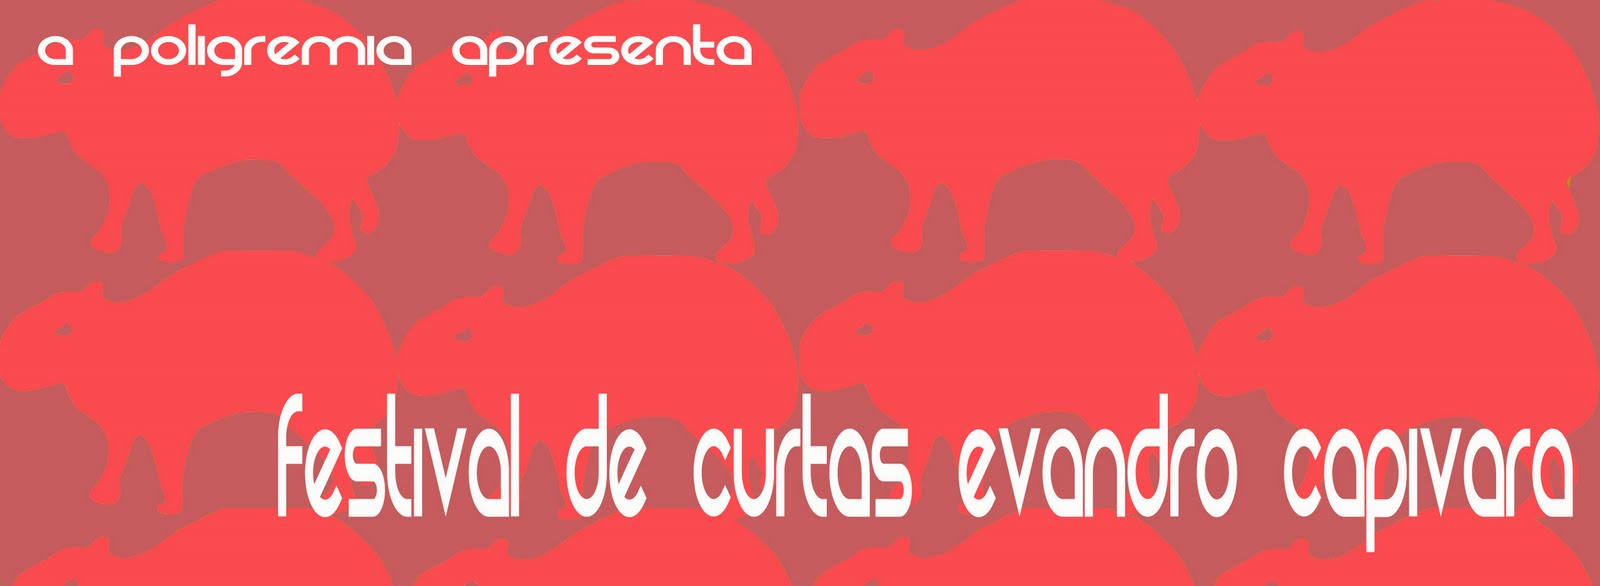 Festival de Curtas Evandro Capivara